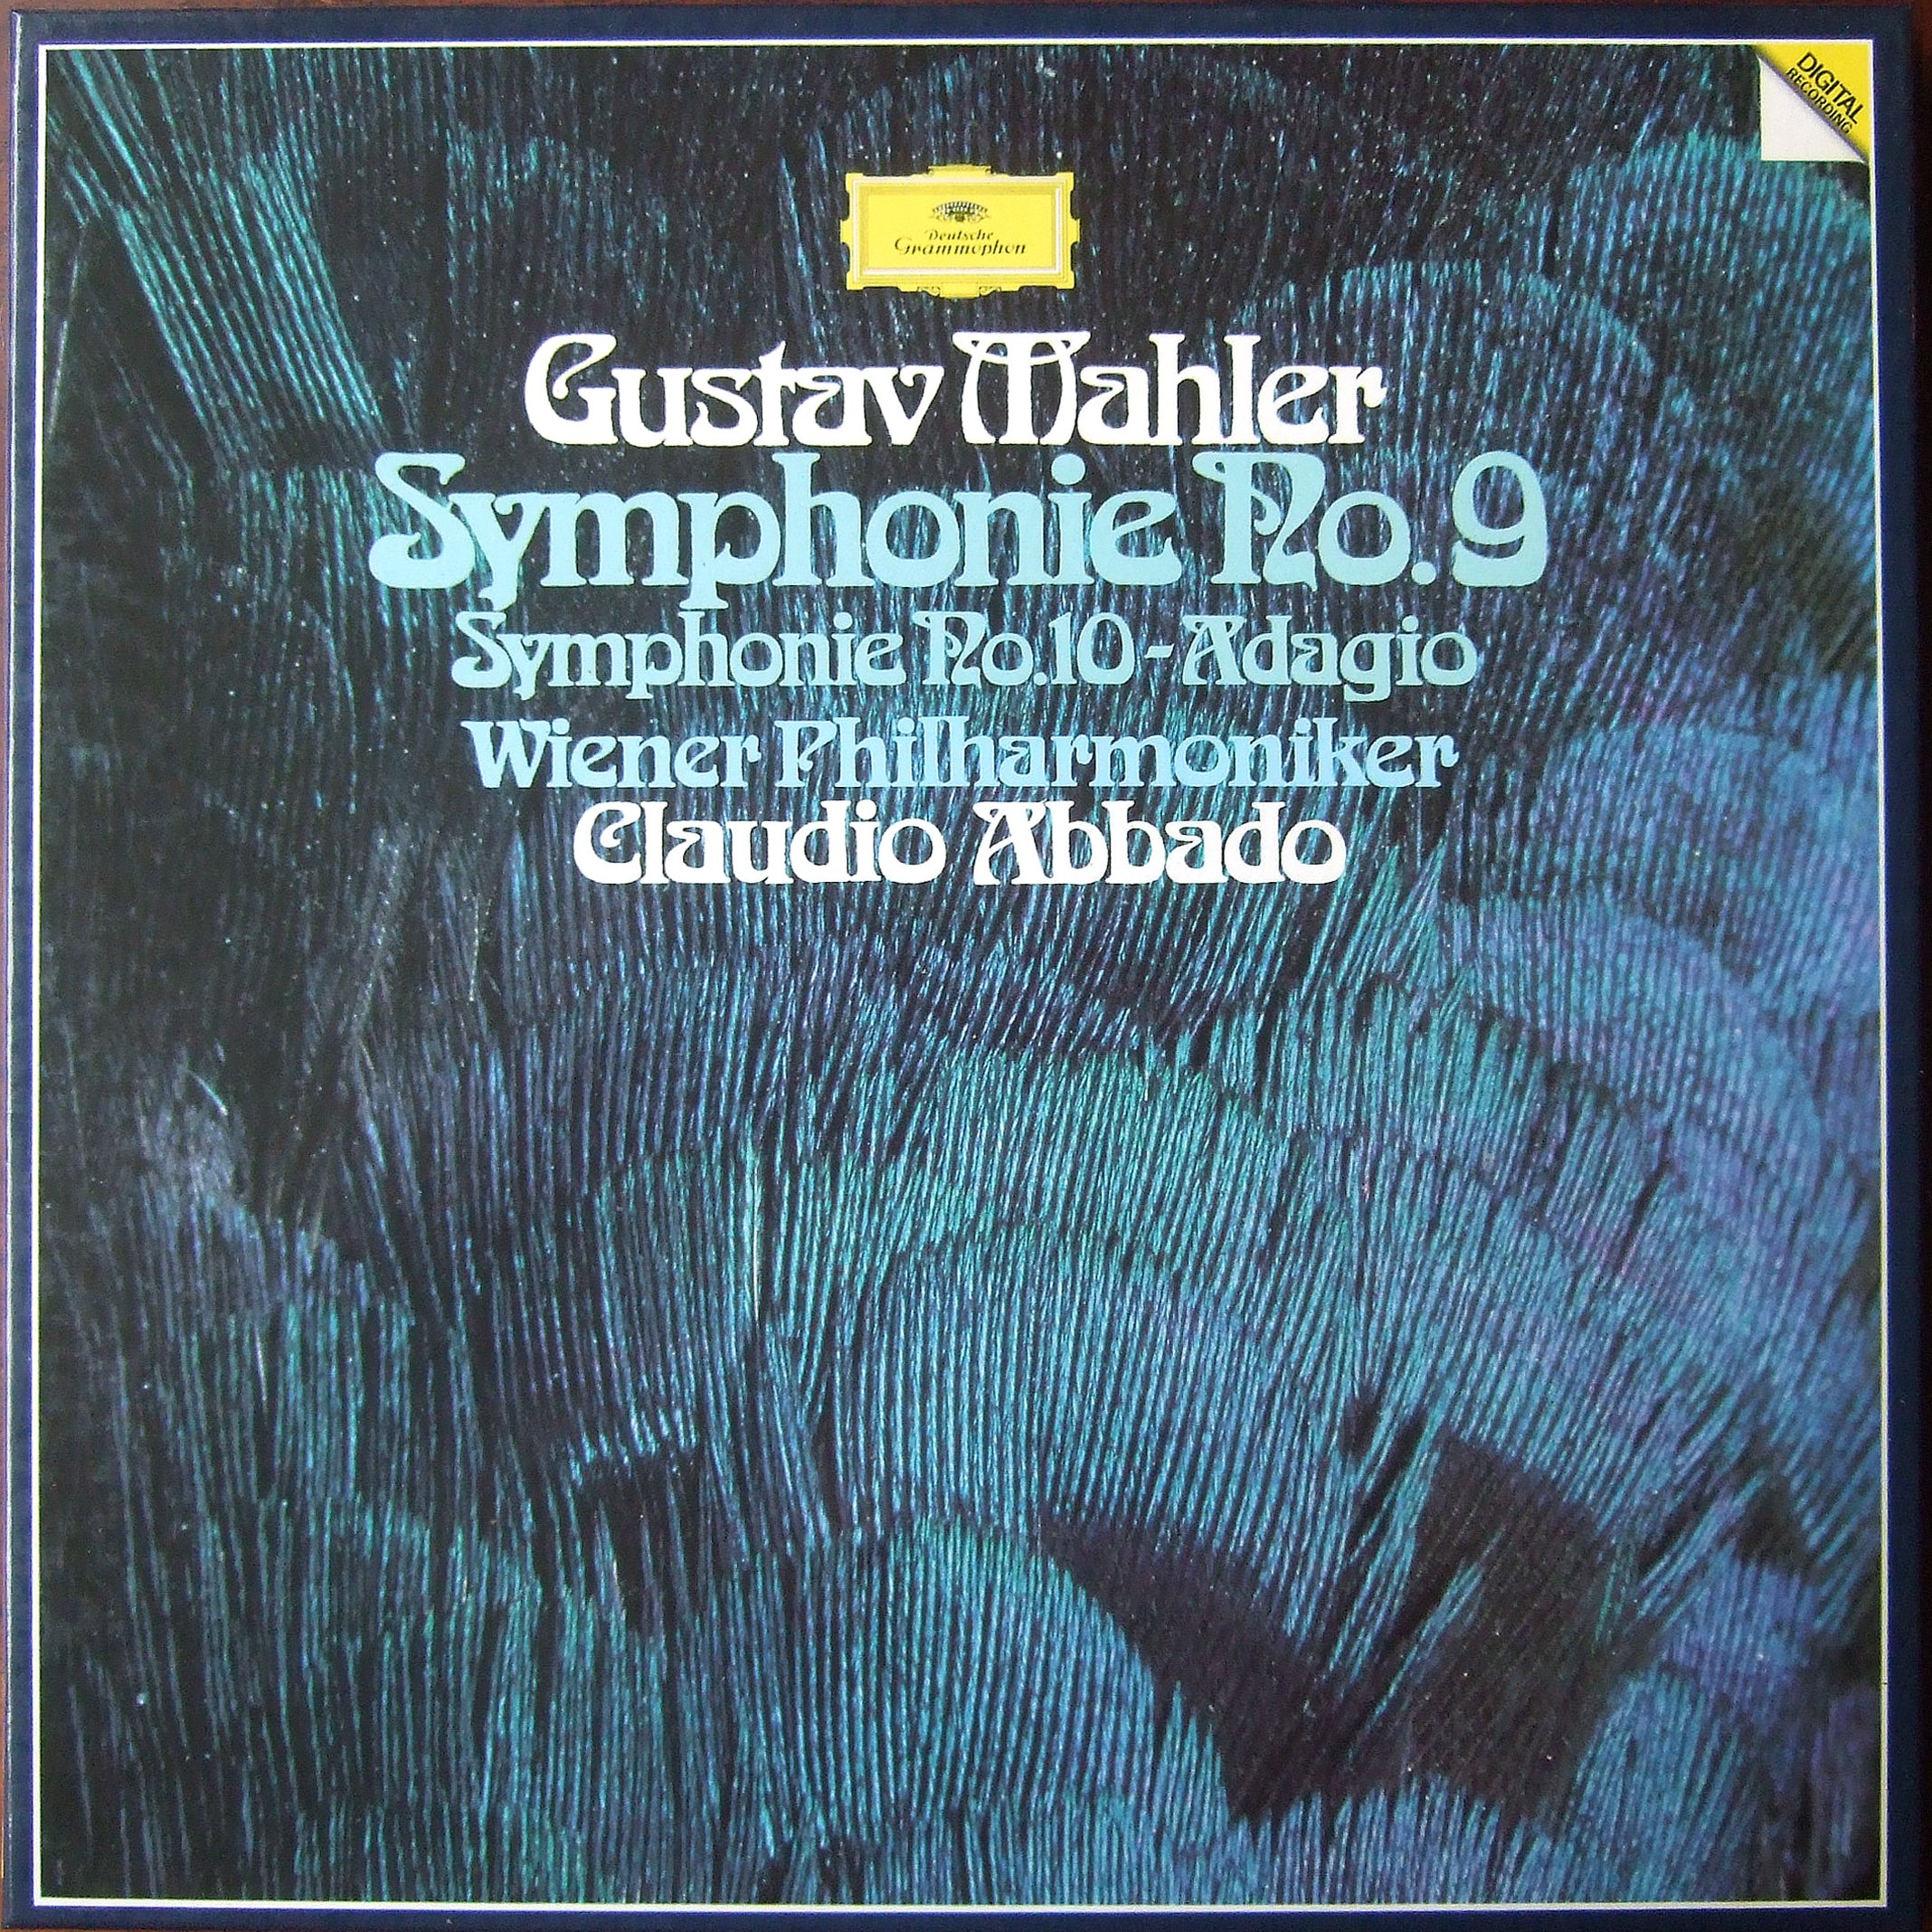 DGG 423 564 Mahler Symphonie 9 & adagio Symphonie 10 Abbado DGG Digital Aufnahme